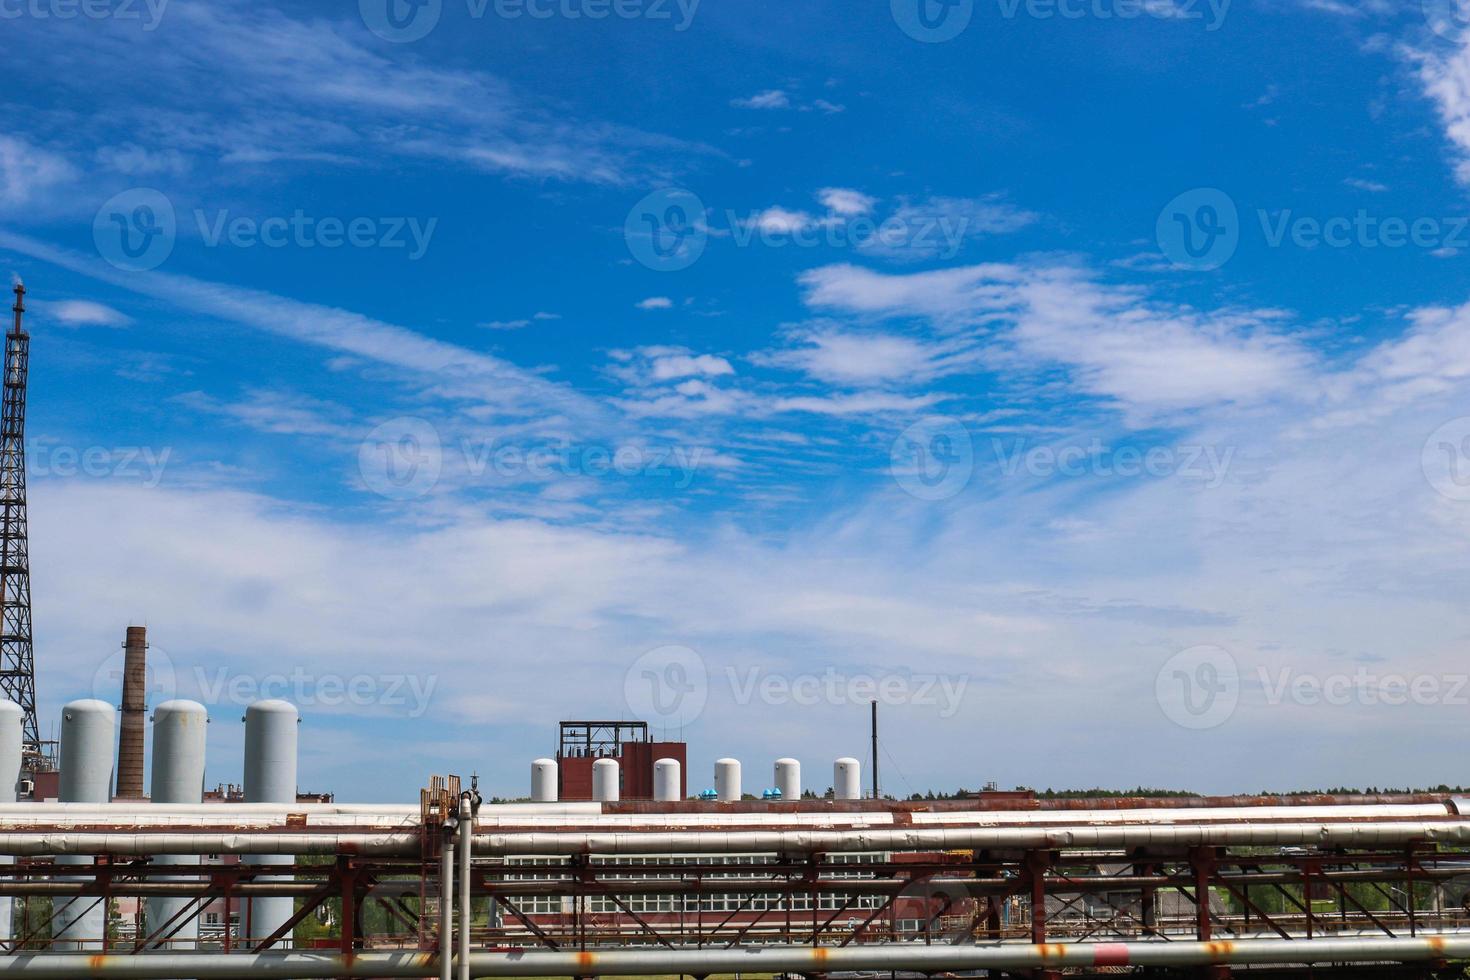 vue d'un viaduc de pipeline avec des tuyaux, des colonnes de réservoirs contre un ciel bleu avec des nuages dans une usine pétrochimique de raffinerie de produits chimiques industriels photo